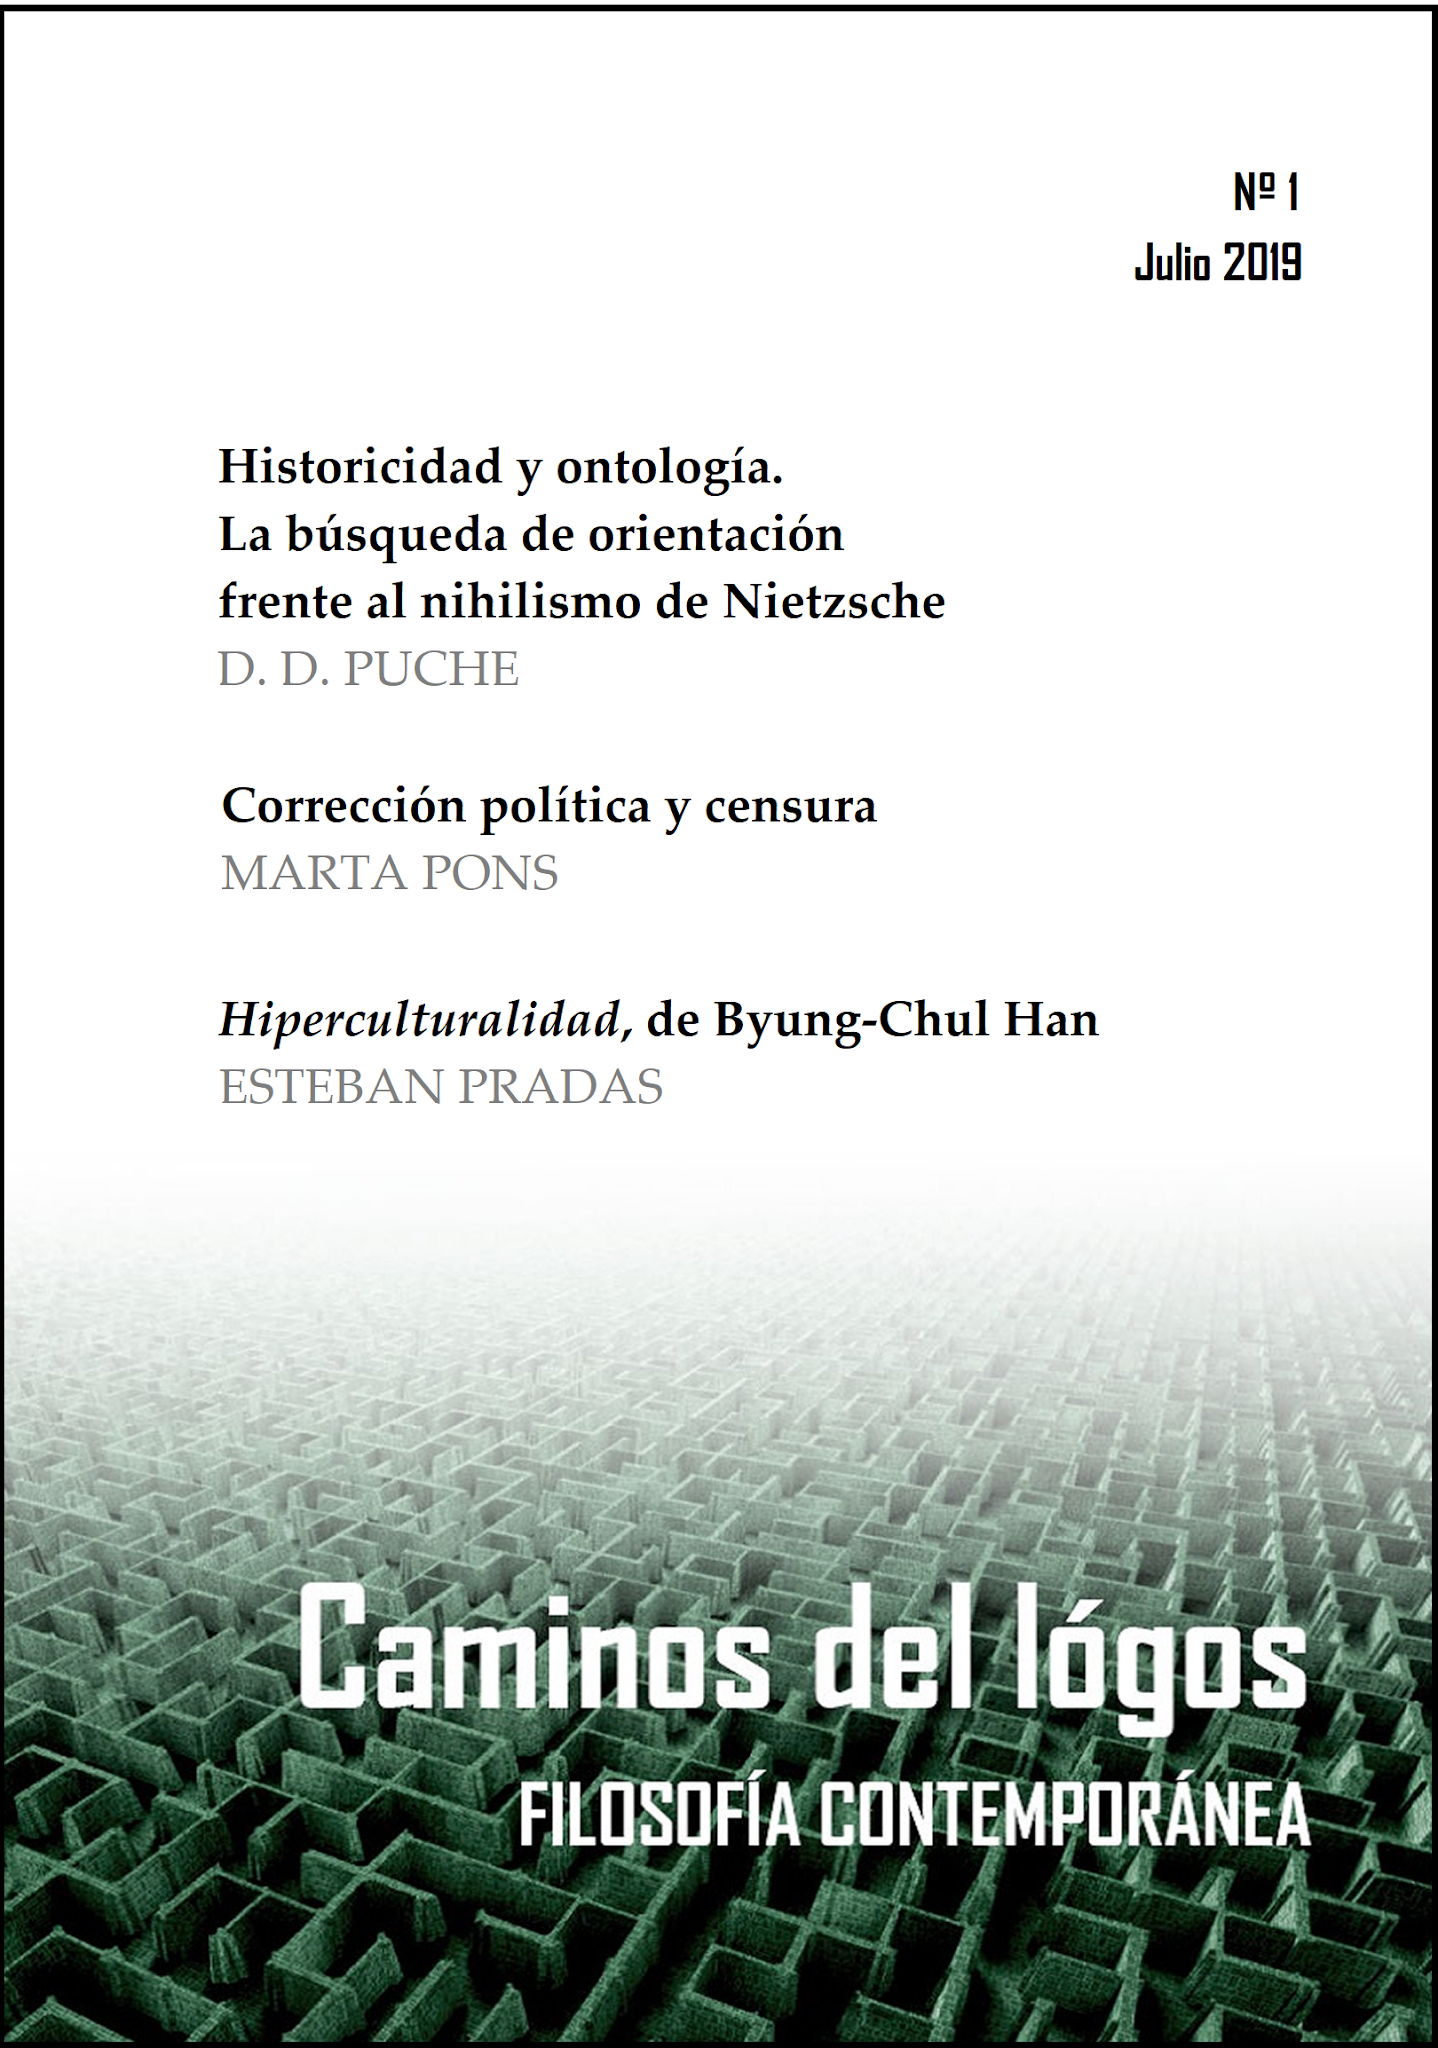 Revista Caminos del lógos. Filosofía y humanidades.